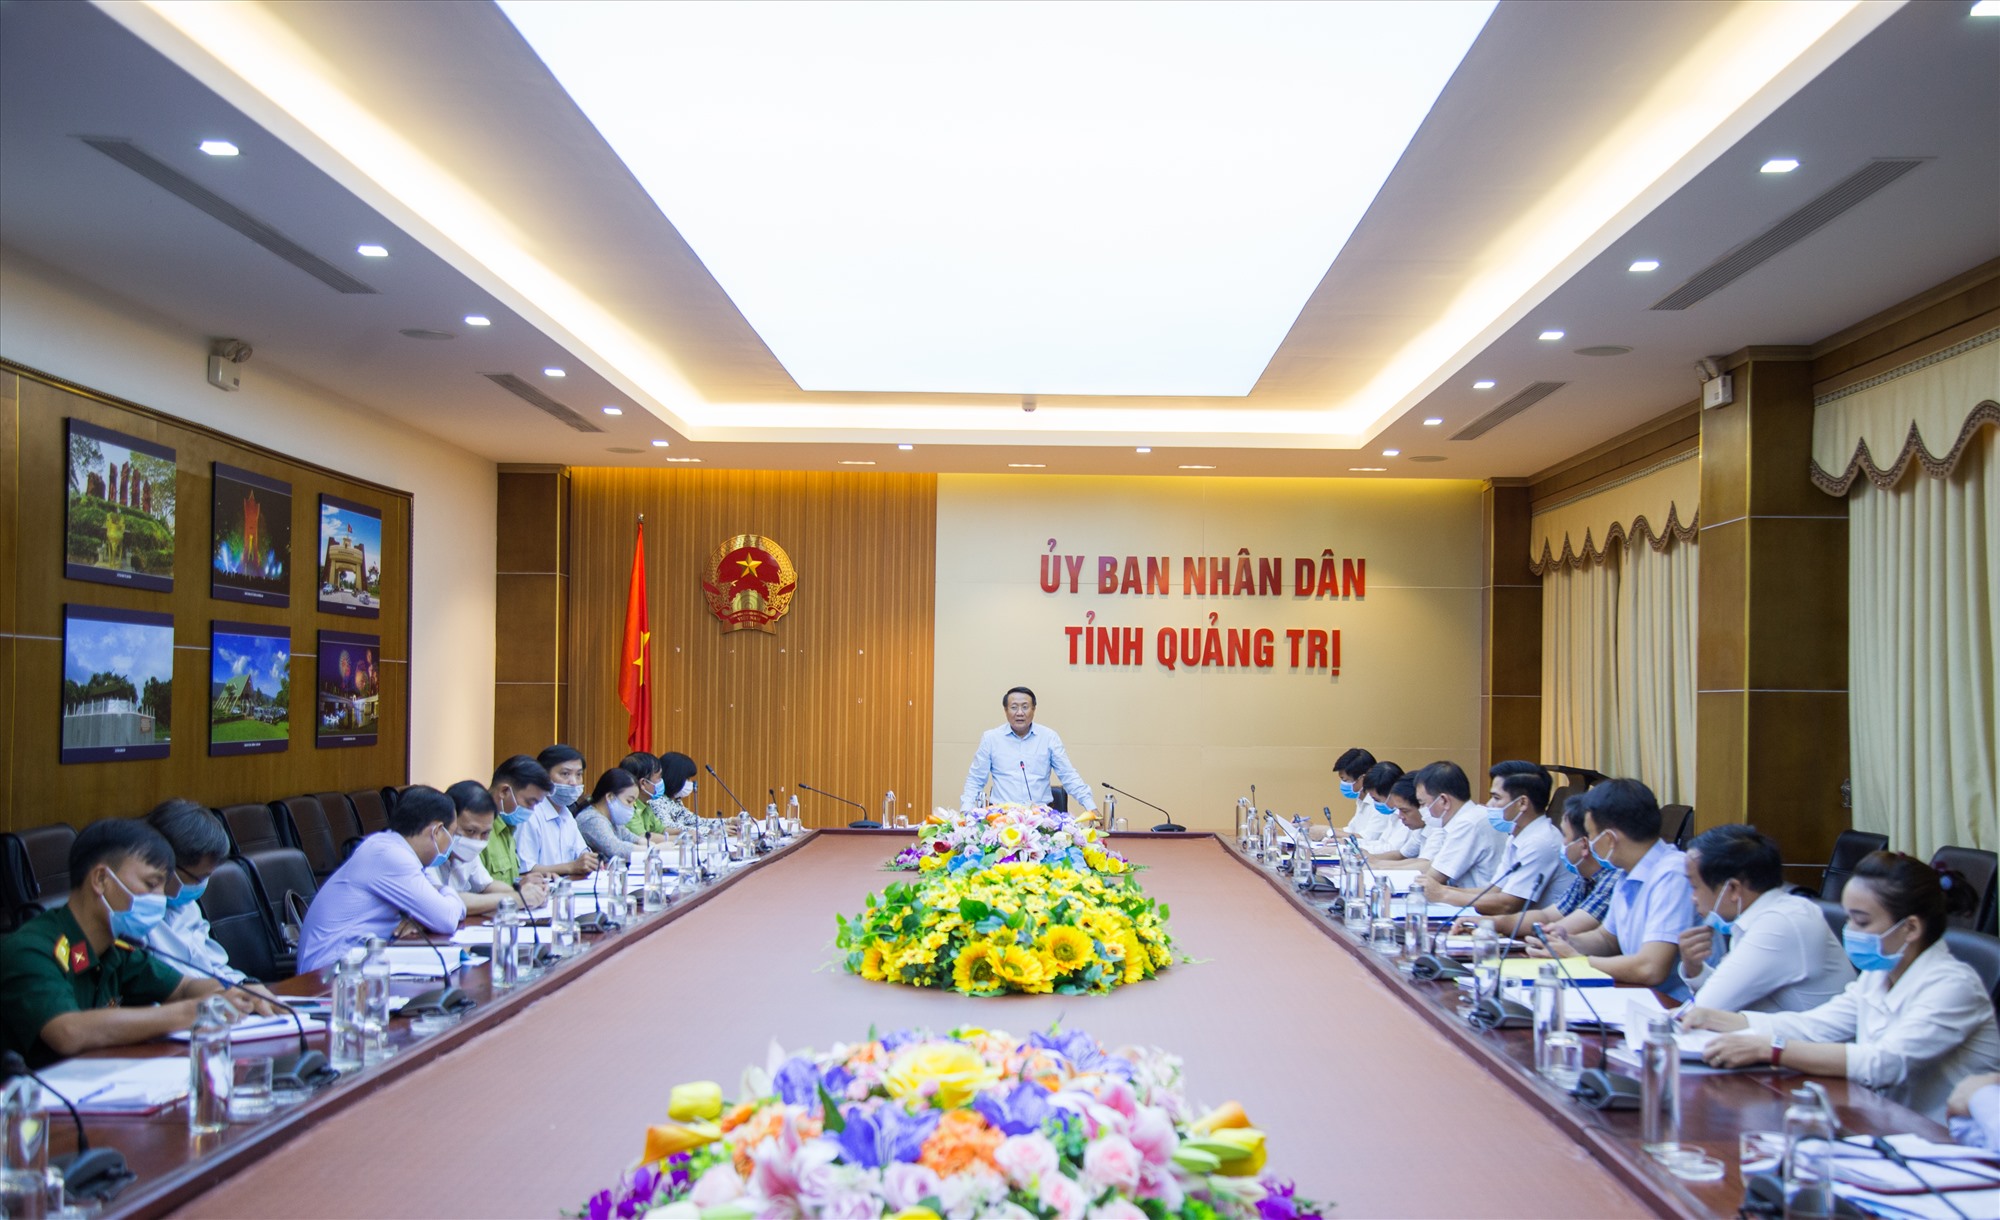 Phó Chủ tịch Thường trực UBND tỉnh Hà Sỹ Đồng phát biểu tại cuộc họp - Ảnh: LÊ TRƯỜNG